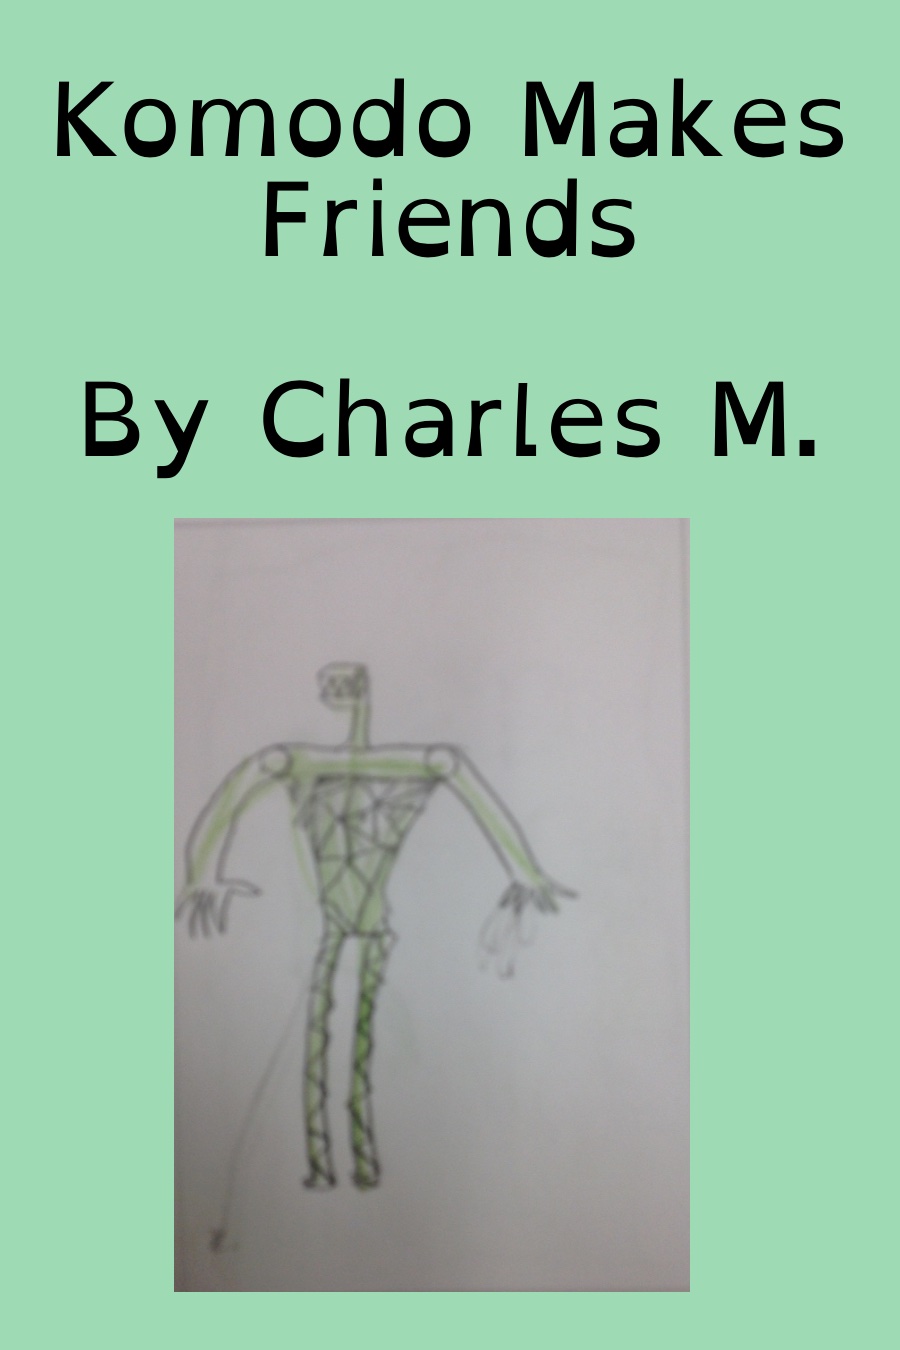 Komodo Makes Friends by Charles M